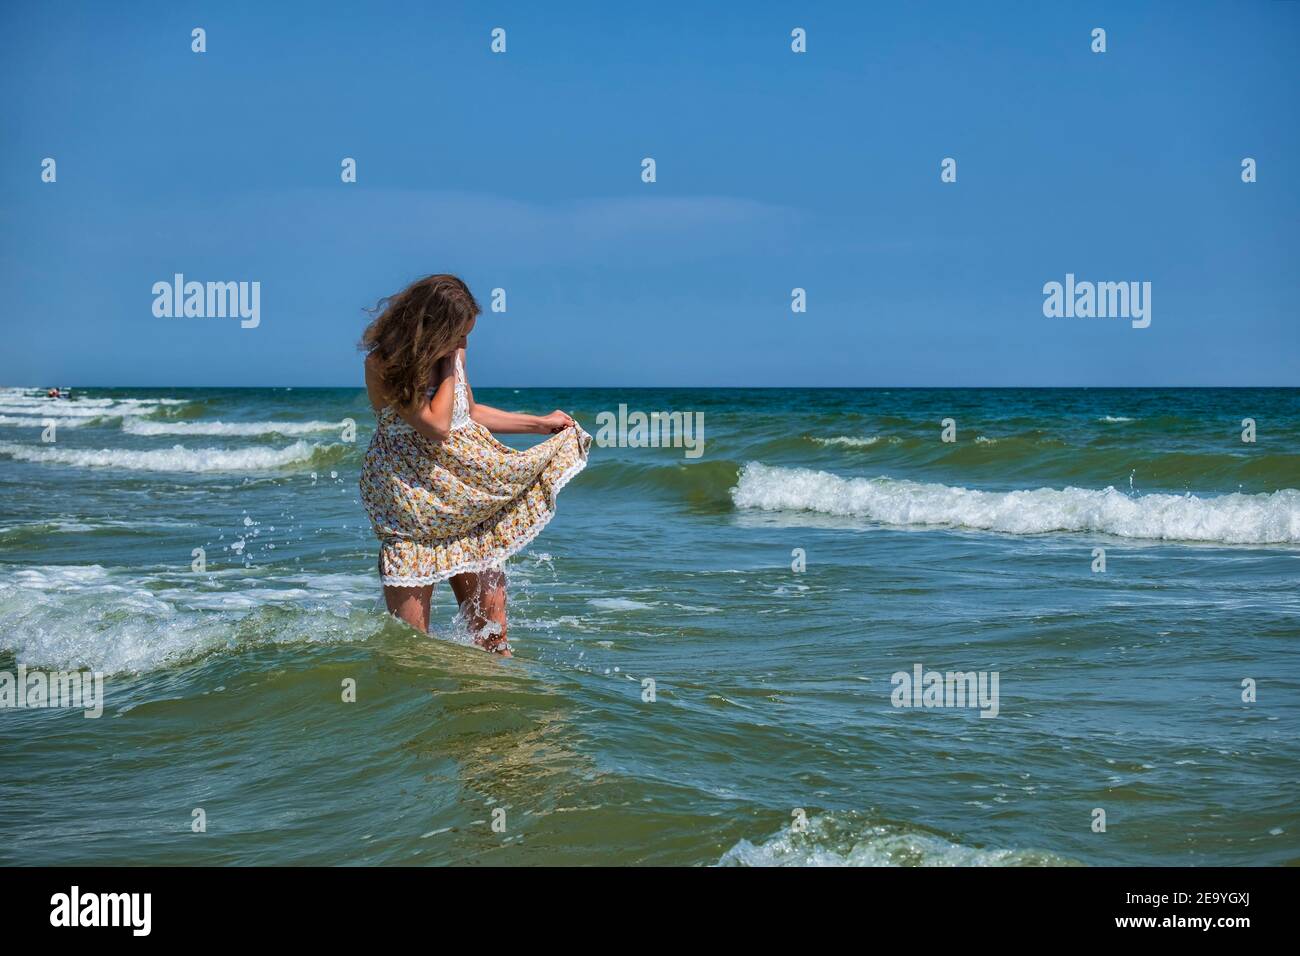 La niña se encuentra en el mar, levantando el borde de una sundress para que no esté húmeda Foto de stock